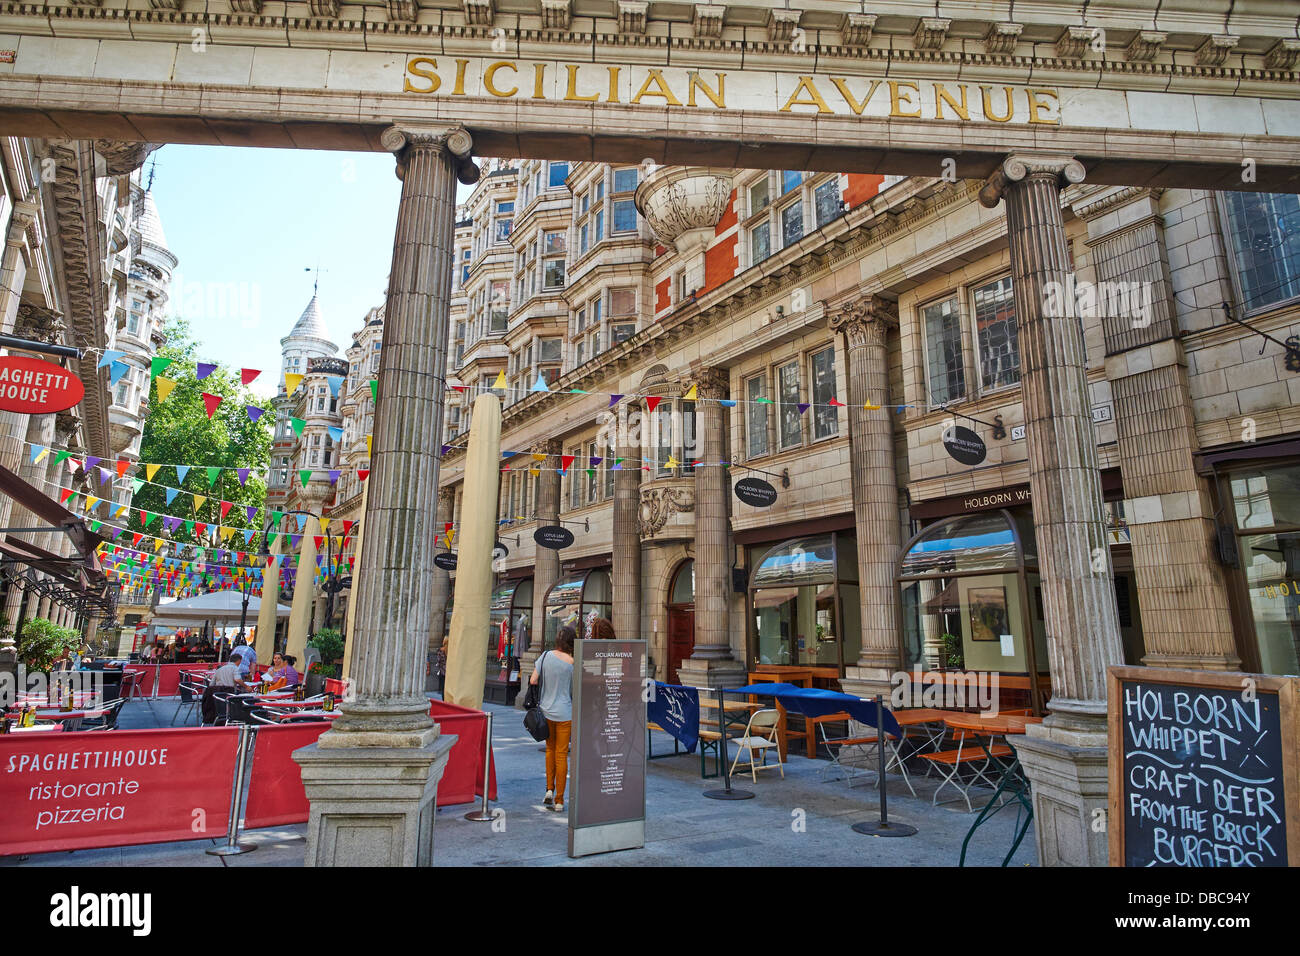 Sizilianische Avenue Holborn London UK Stockfoto